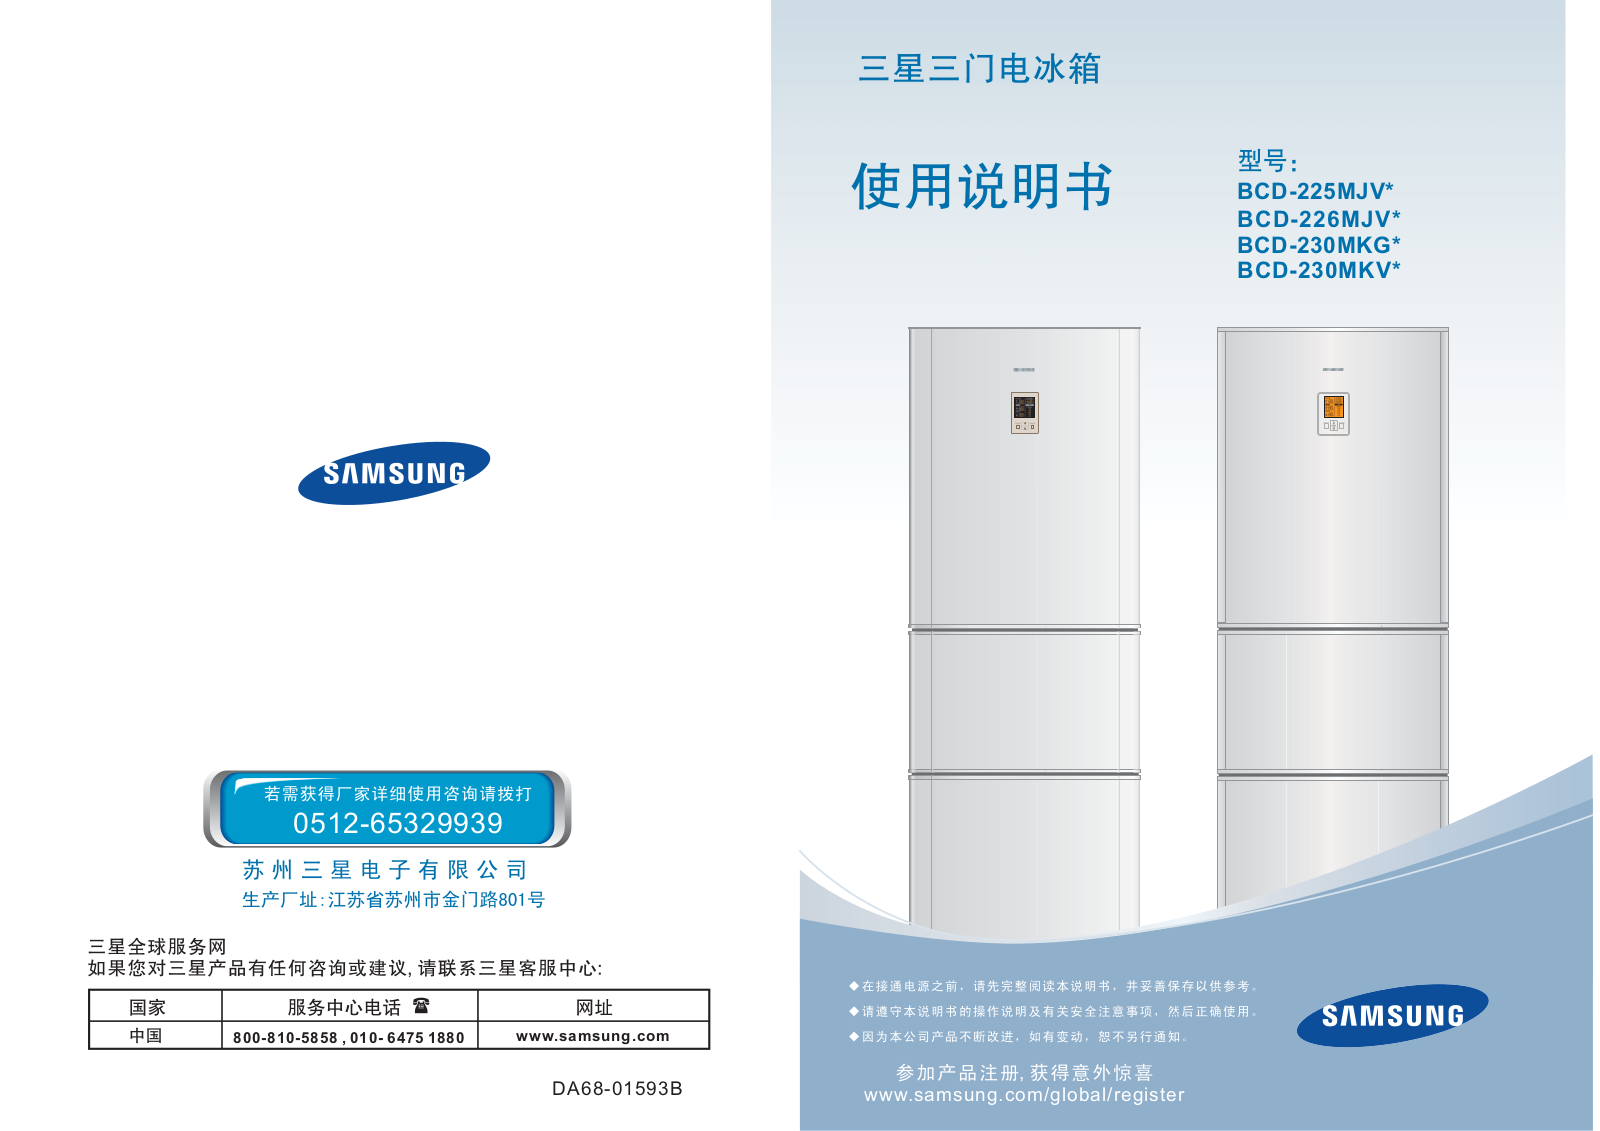 Samsung BCD-230MKGR, BCD-230MKVP, BCD-230MKVG, BCD-230MKGB Manual